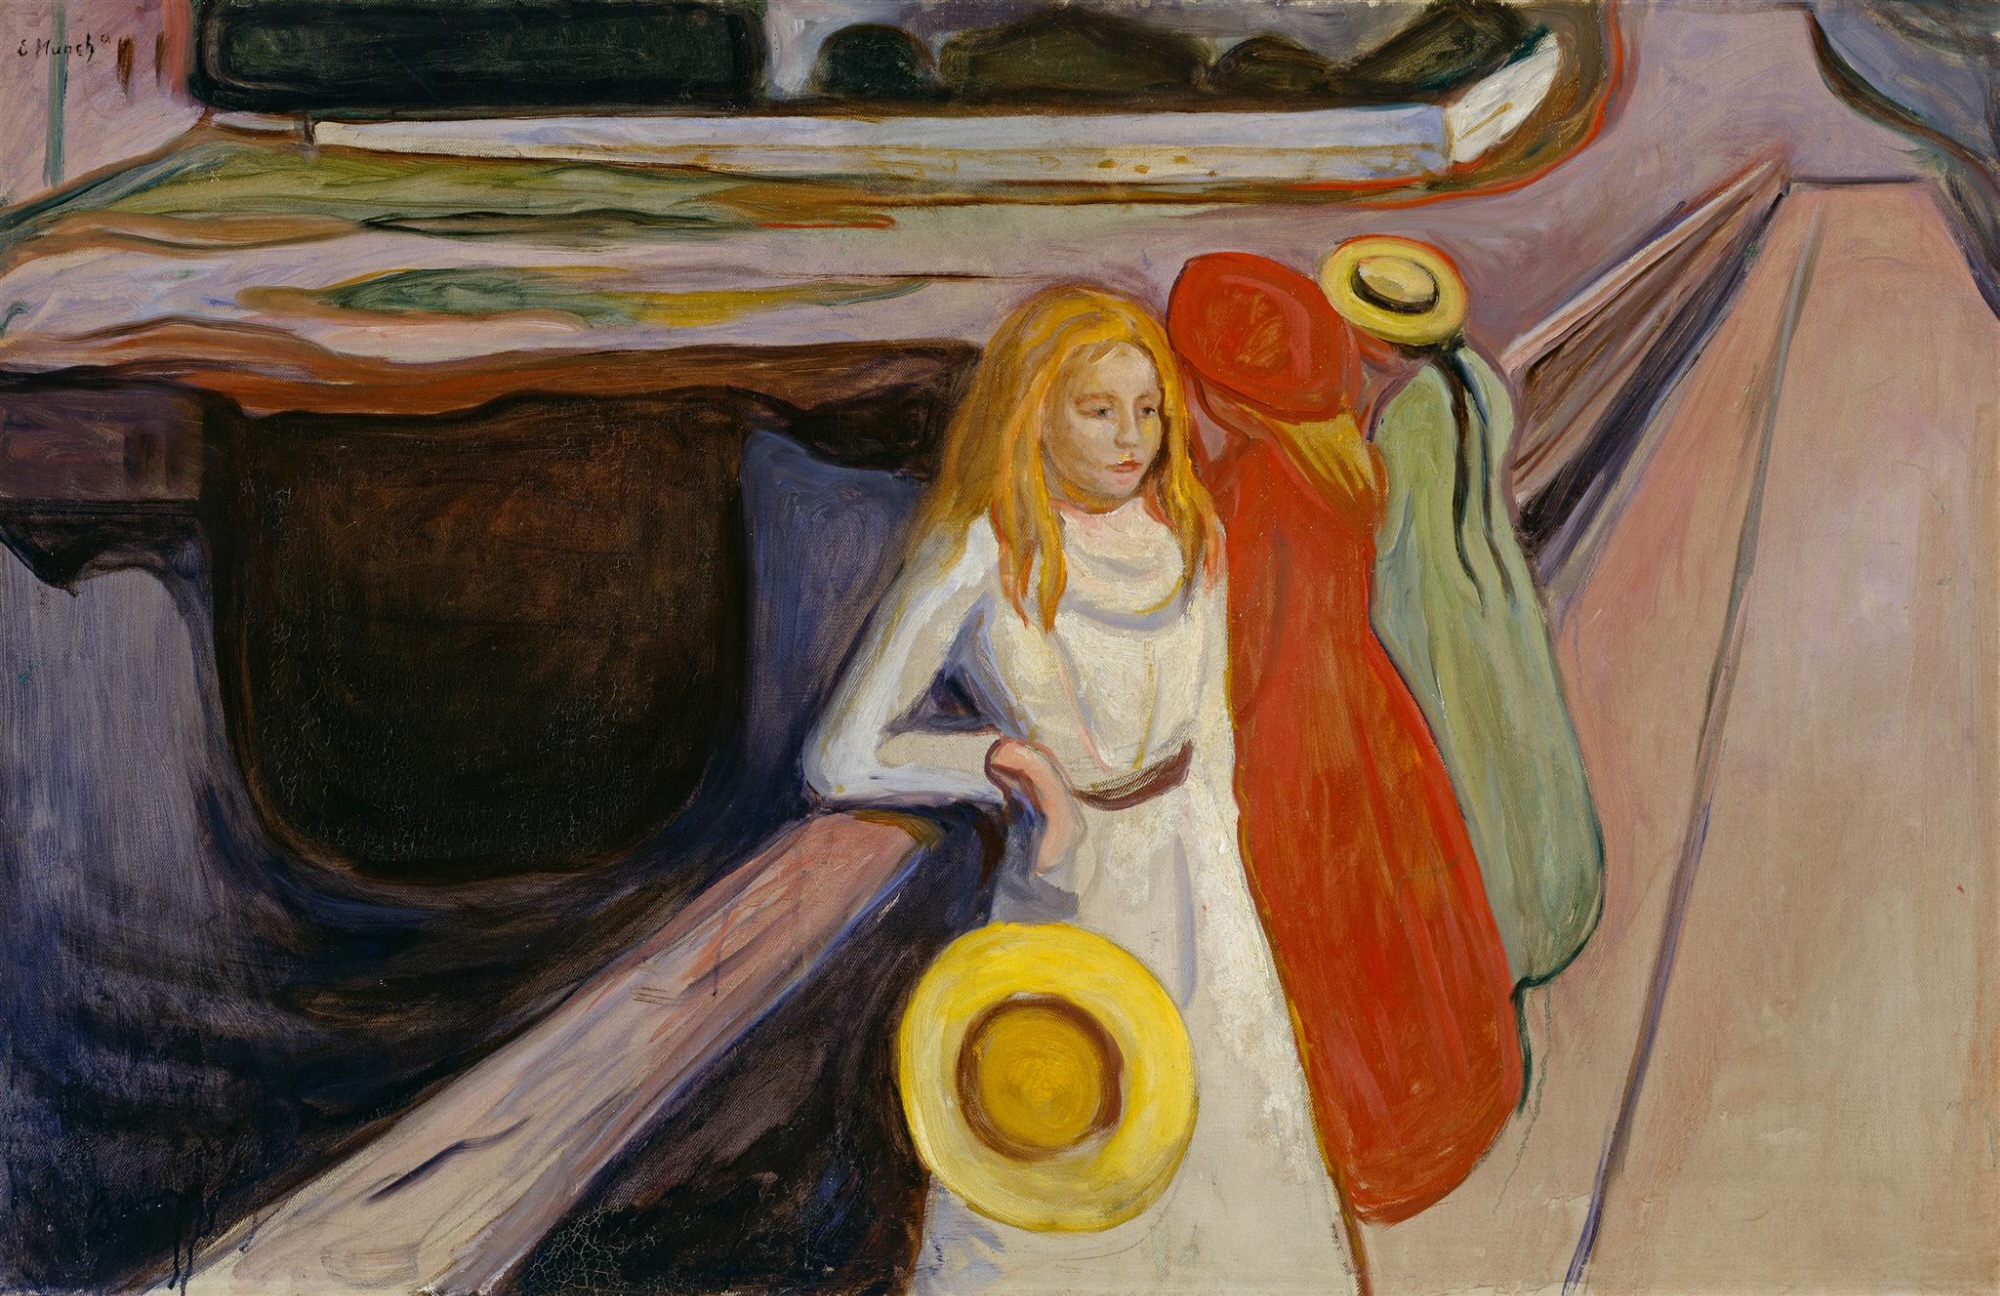 Mädchen auf der Brücke by Edvard Munch - 1901 - 83,8 x 129,6 cm Hamburger Kunsthalle